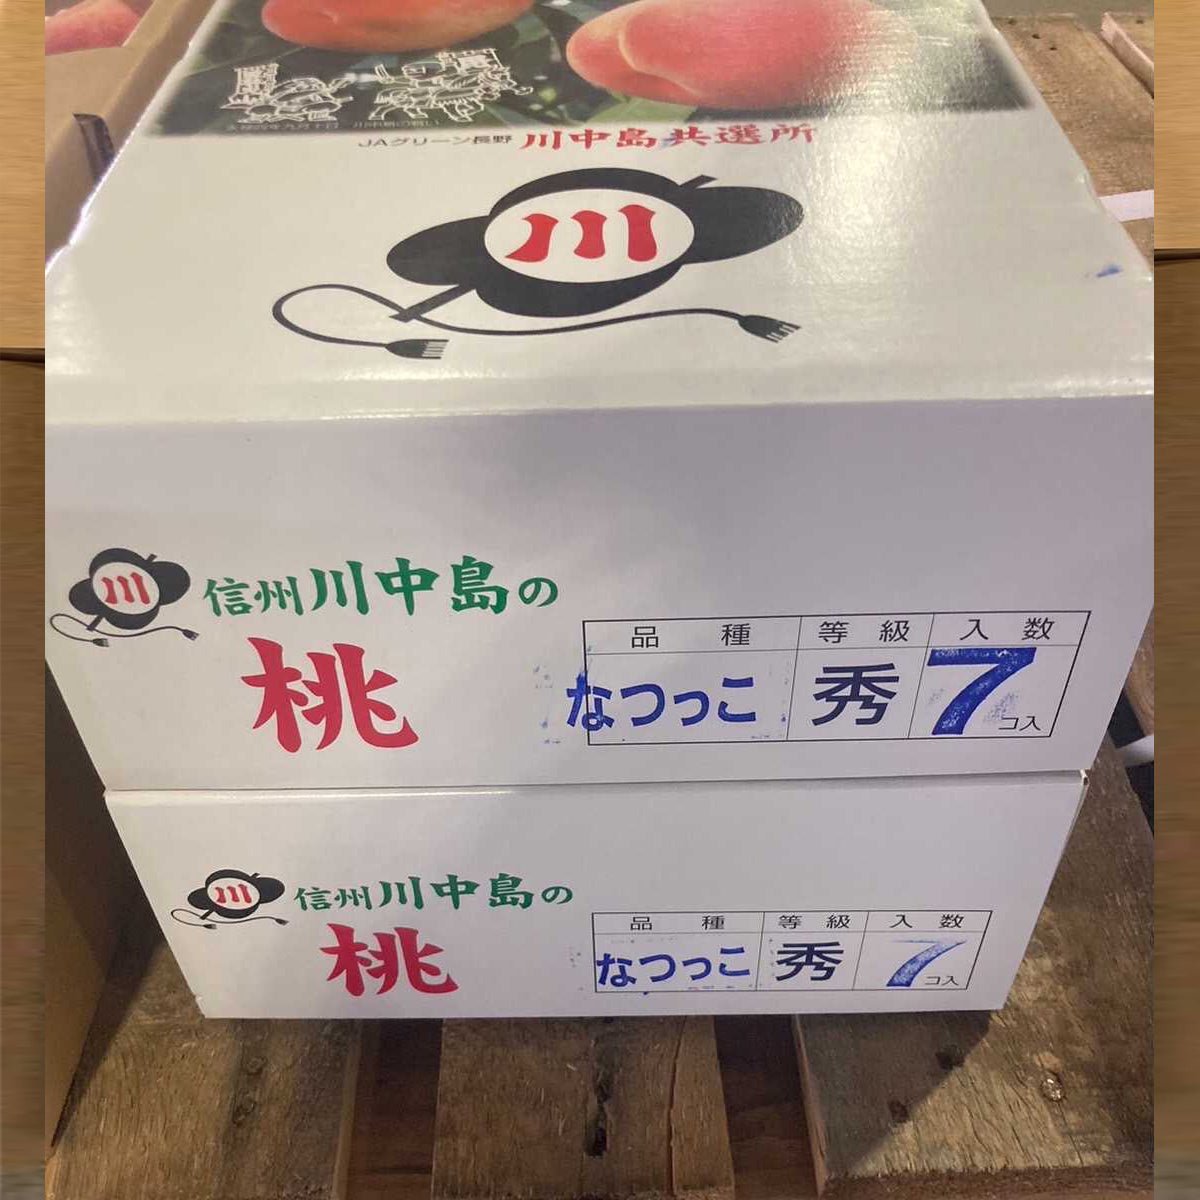 Nagano Kawanakajima NATSUKKO Peach 2kg Gift Box (夏っ子) "好吃桃" - Tokyo Fresh Direct